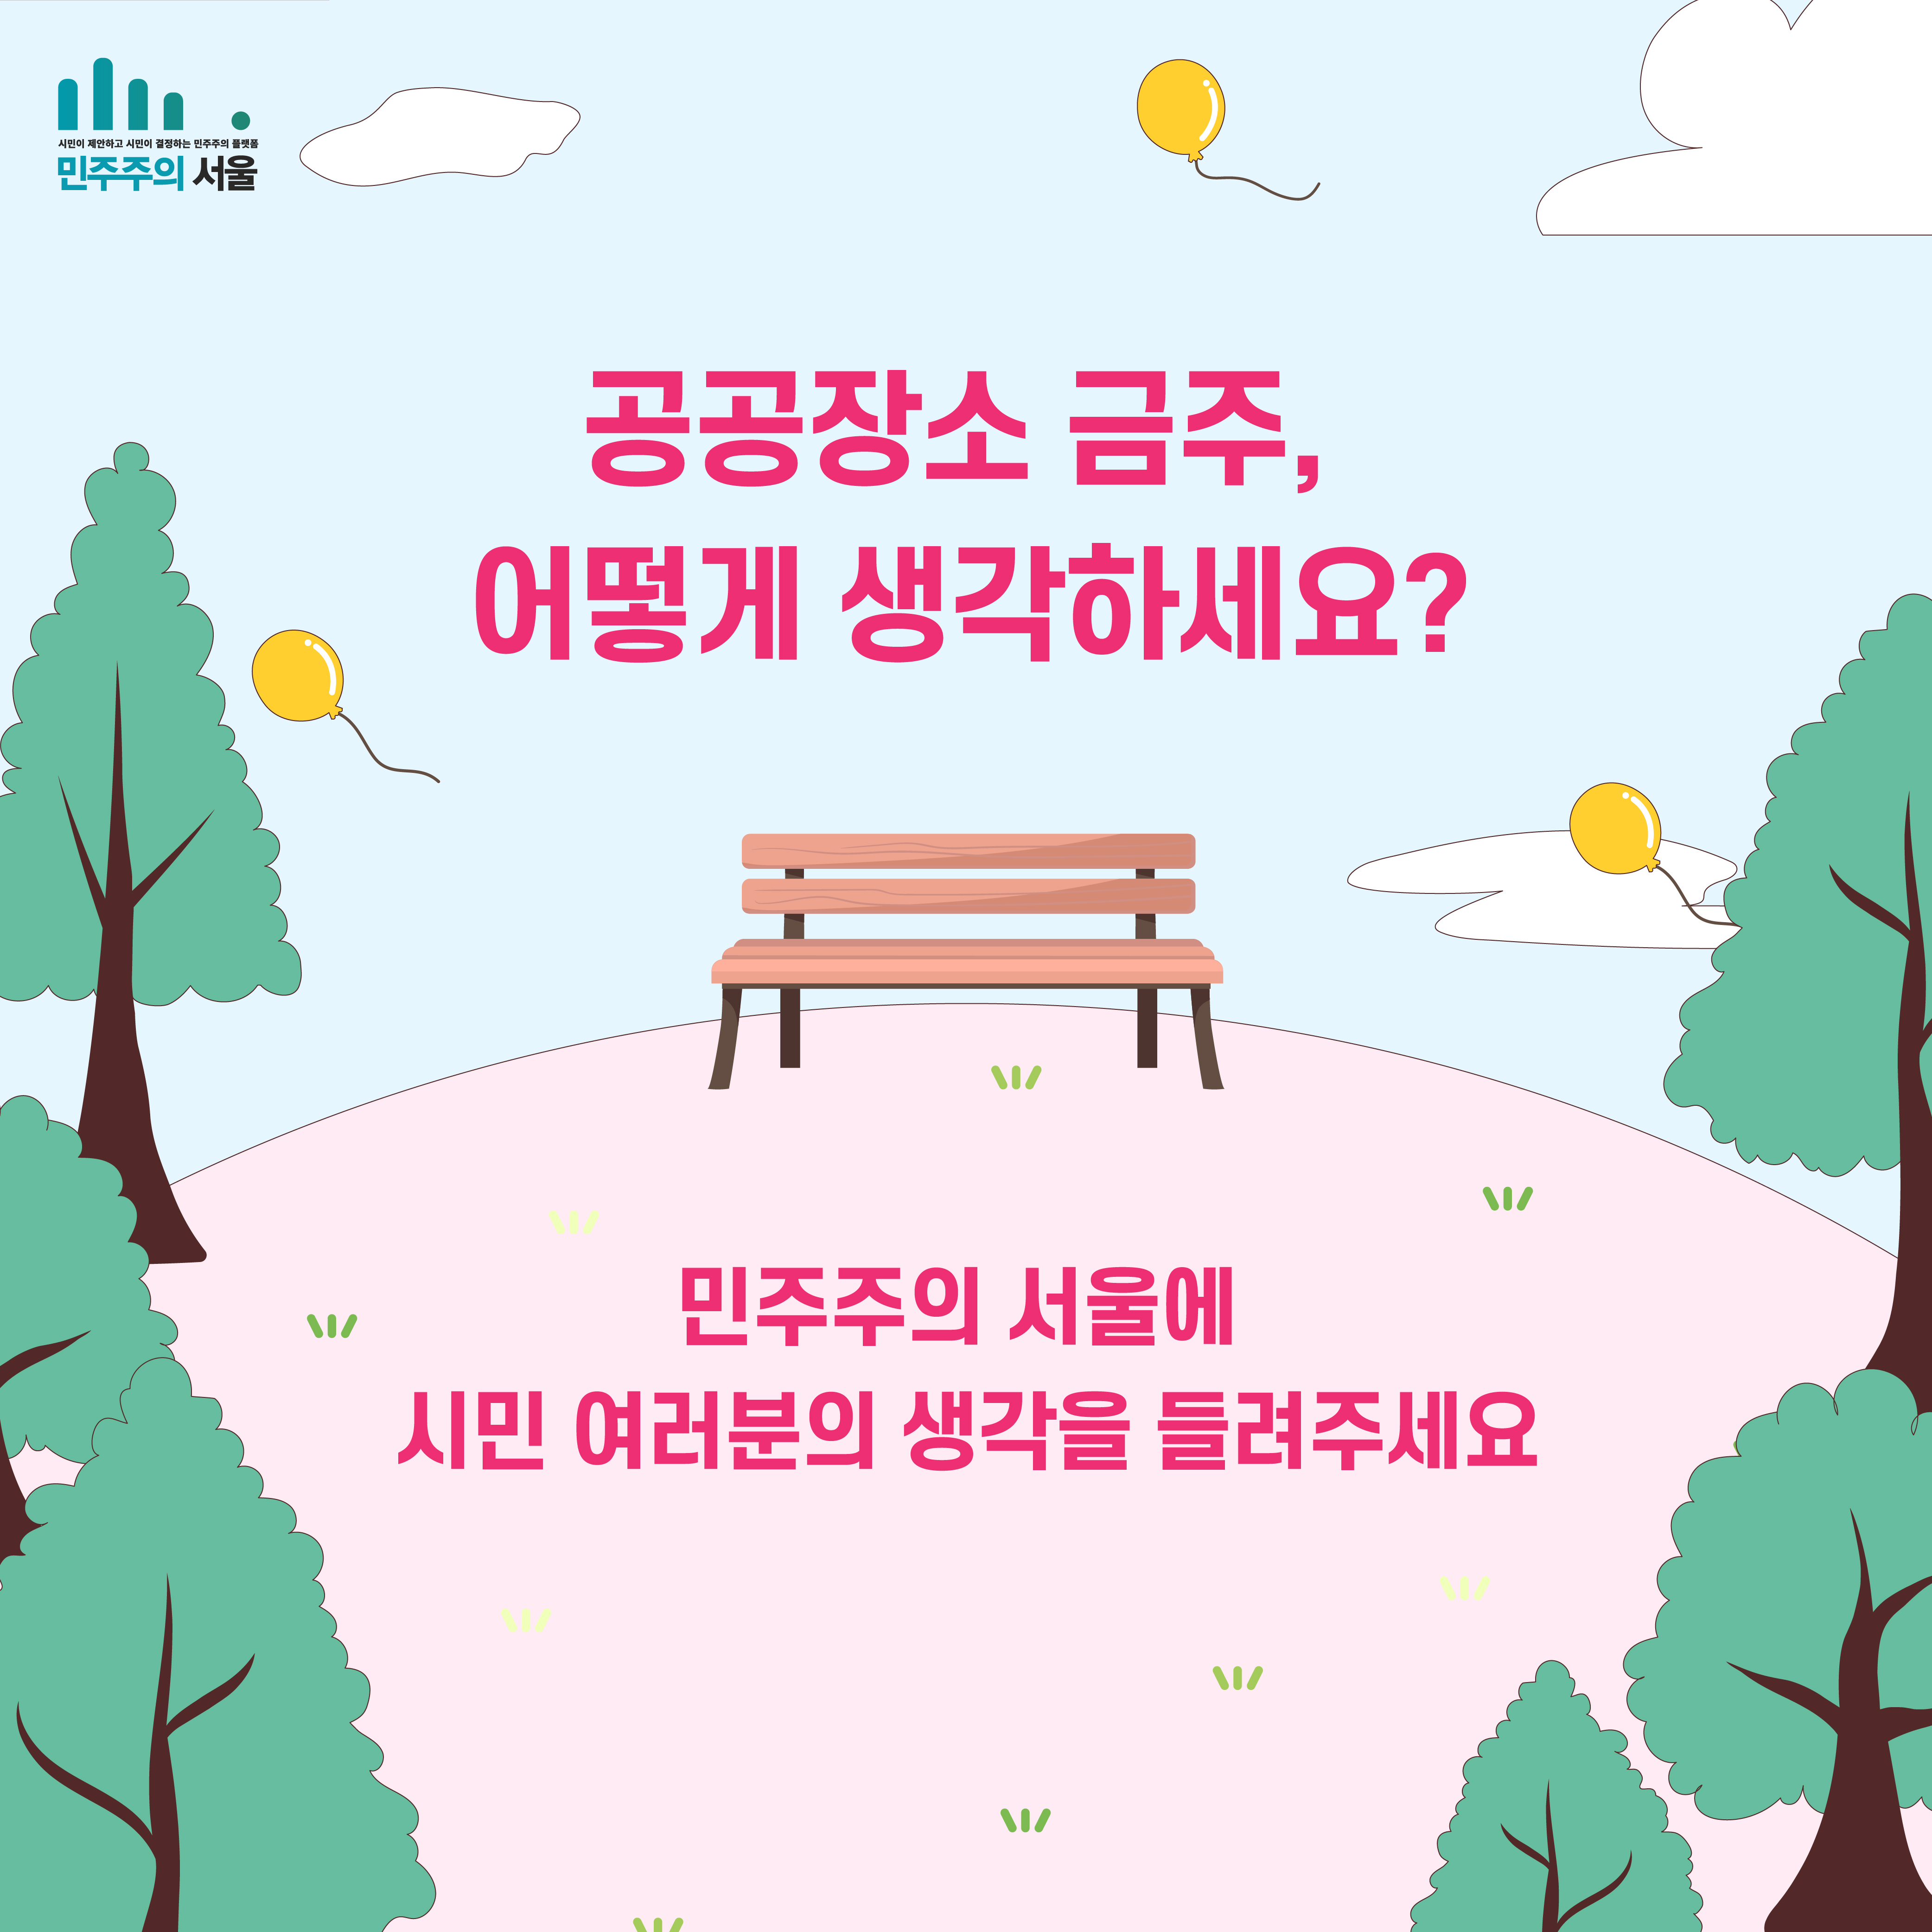 공공장소 금주, 어떻게 생각하세요? 민주주의 서울에 시민 여러분의 생각을 들려주세요